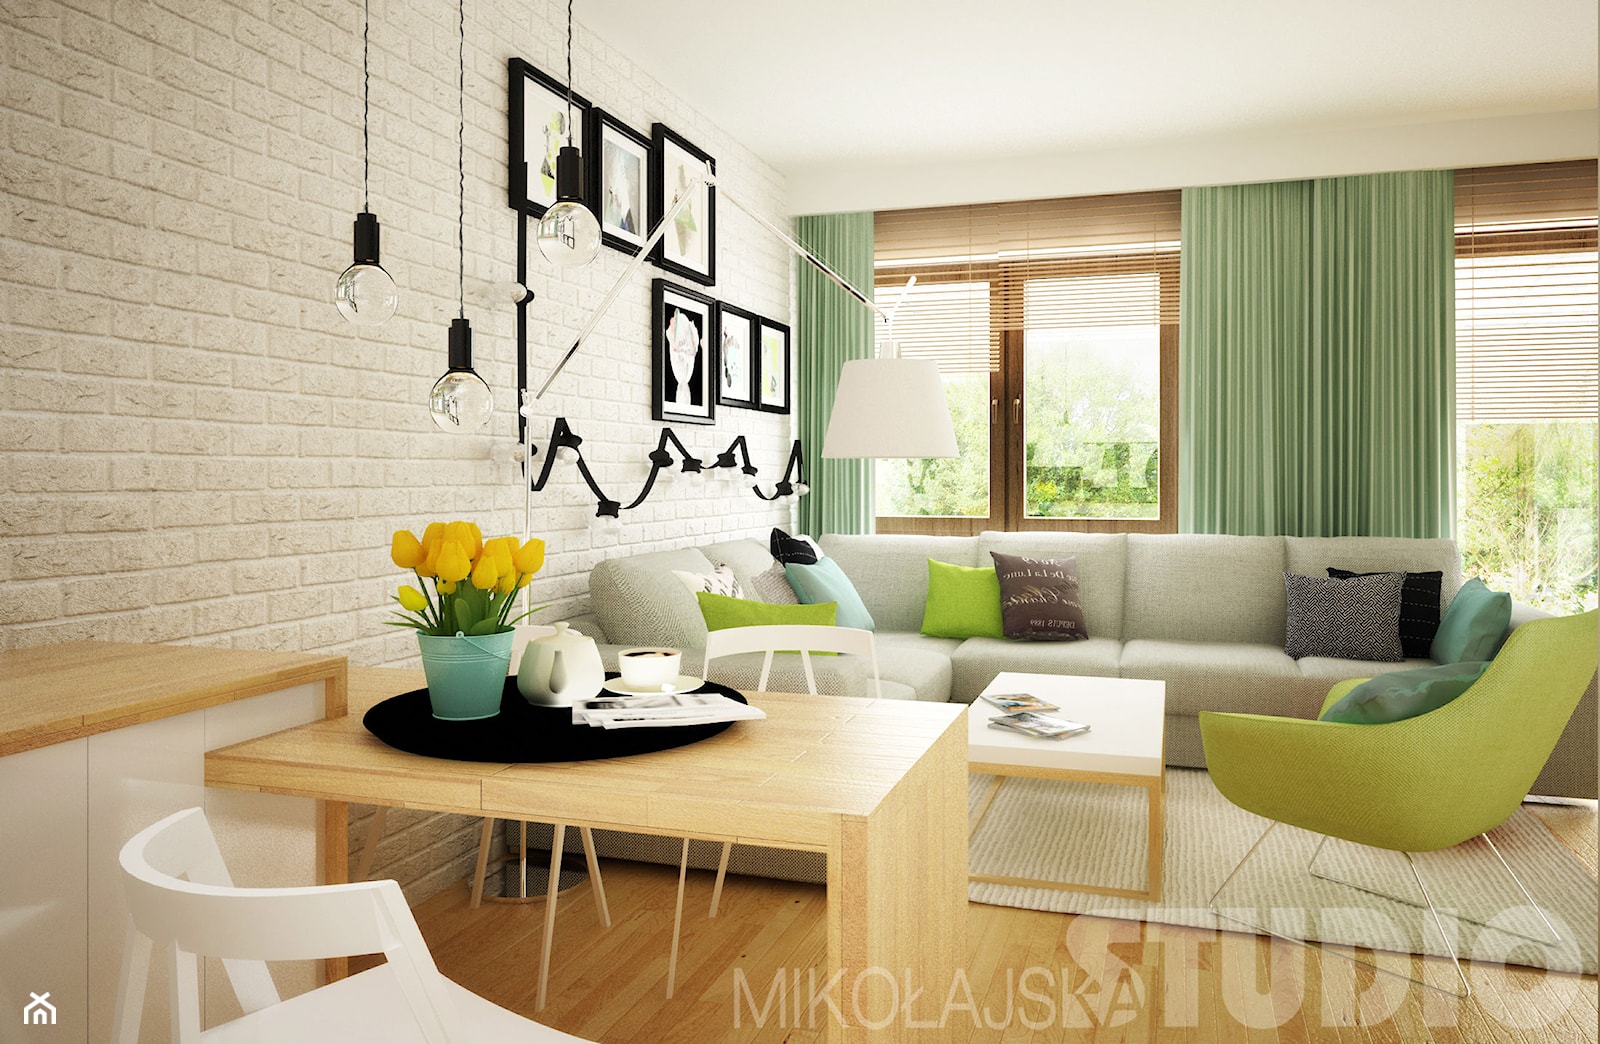 Mieszkanie w pastelowych kolorach - zdjęcie od MIKOŁAJSKAstudio - Homebook